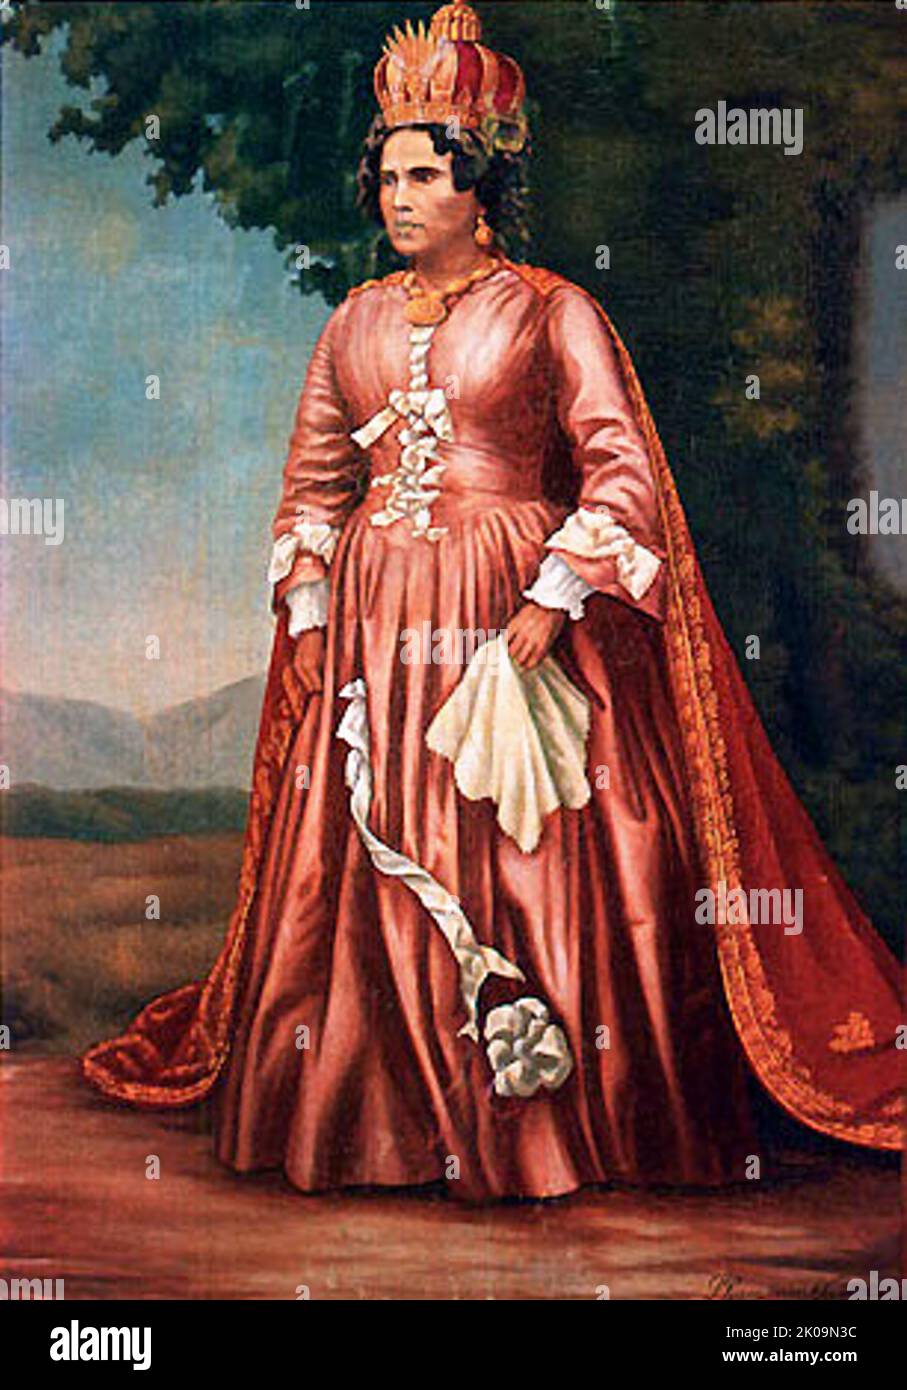 Ranavalona I (c. 1778 - 1861), also known as Ranavalo-Manjaka I, sovereign of the Kingdom of Madagascar from 1828 to 1861. Stock Photo